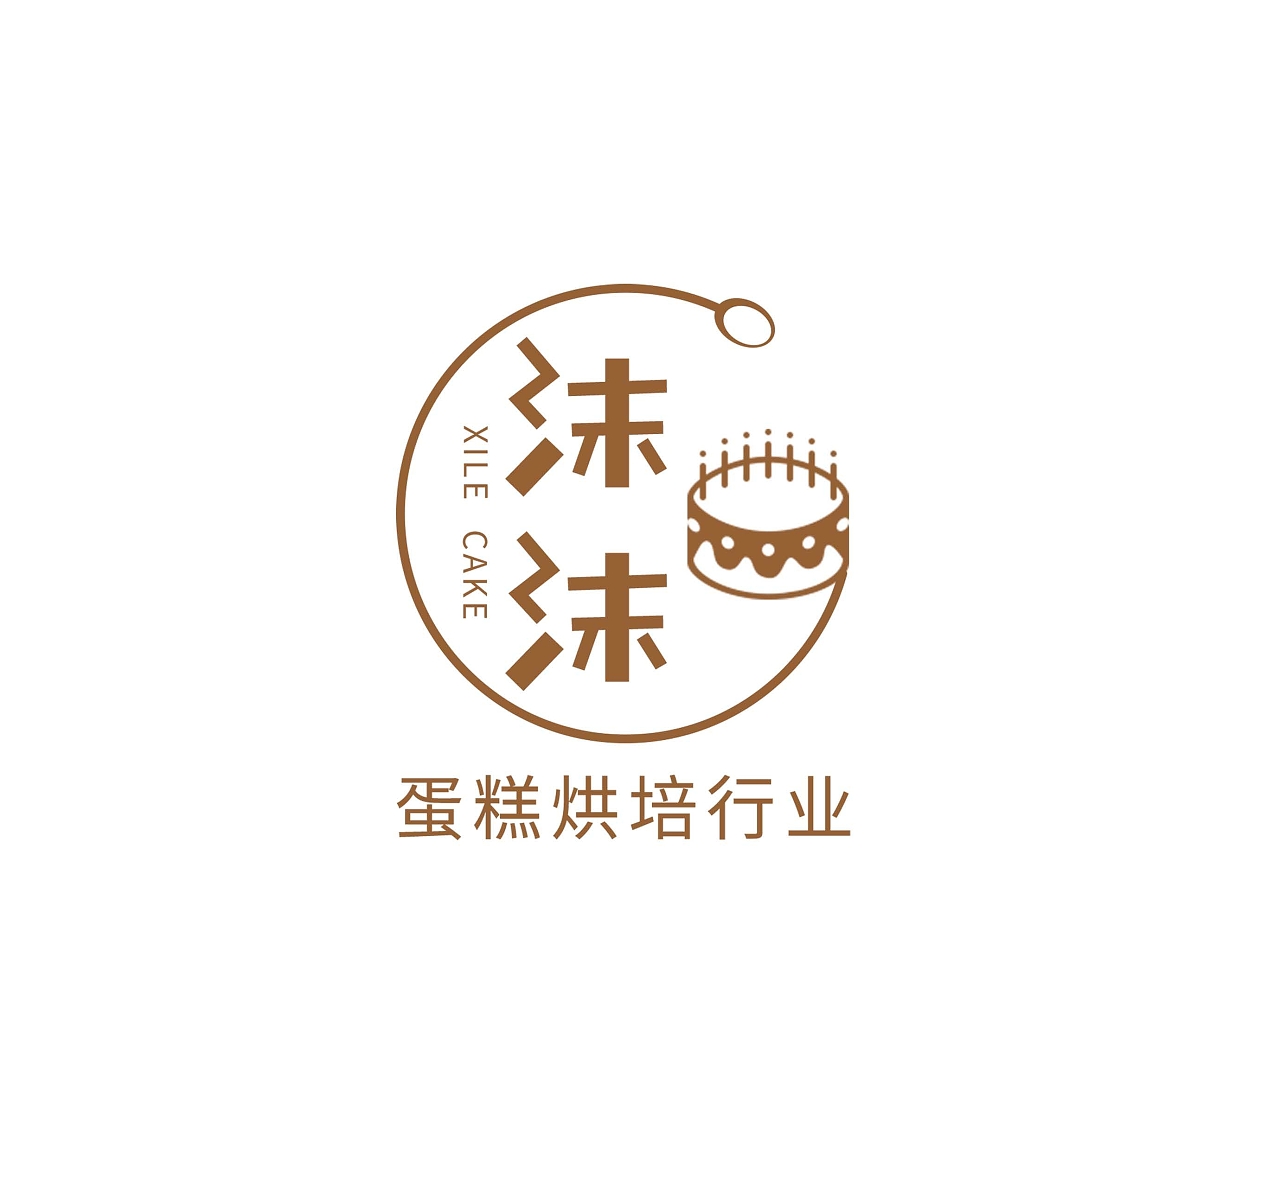 喜乐蛋糕烘培行业简约甜品店LOGO甜品logo